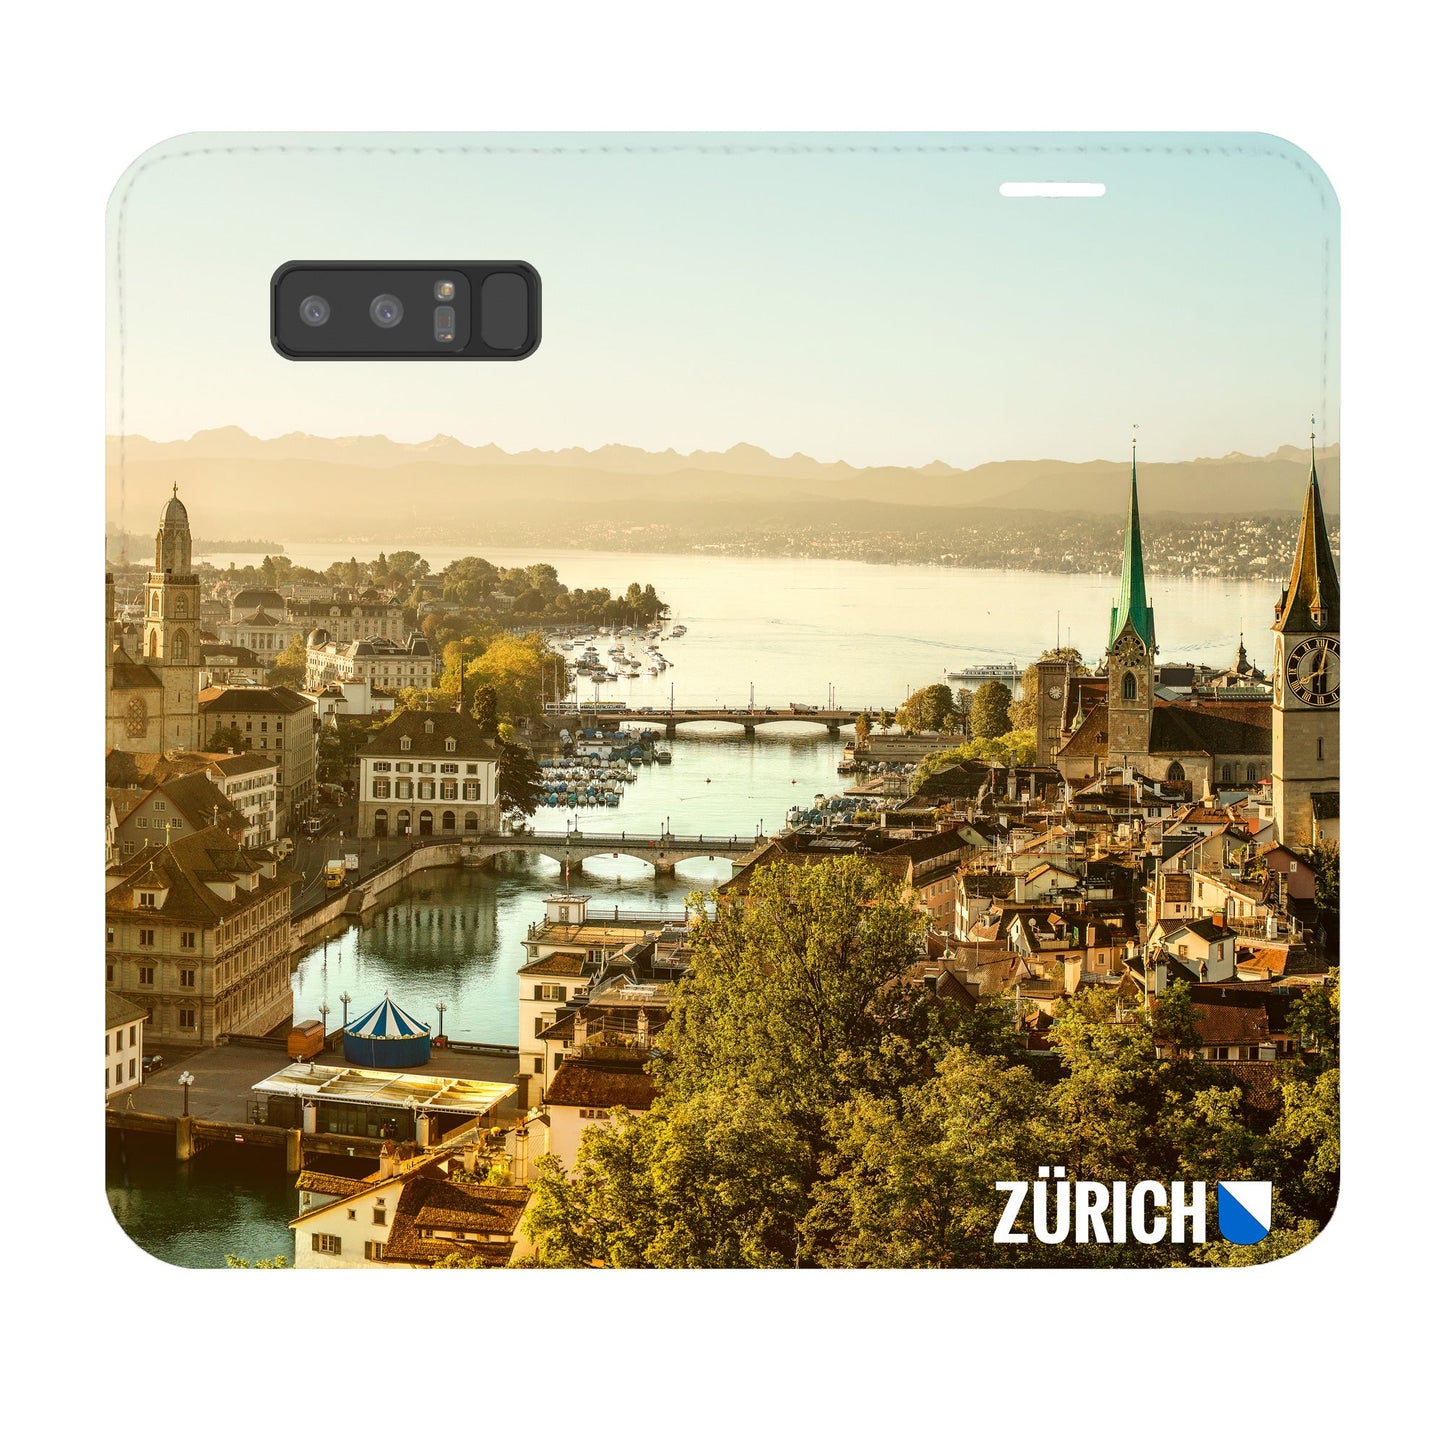 Zürich City von Oben Panorama Case für Samsung Galaxy Note 8